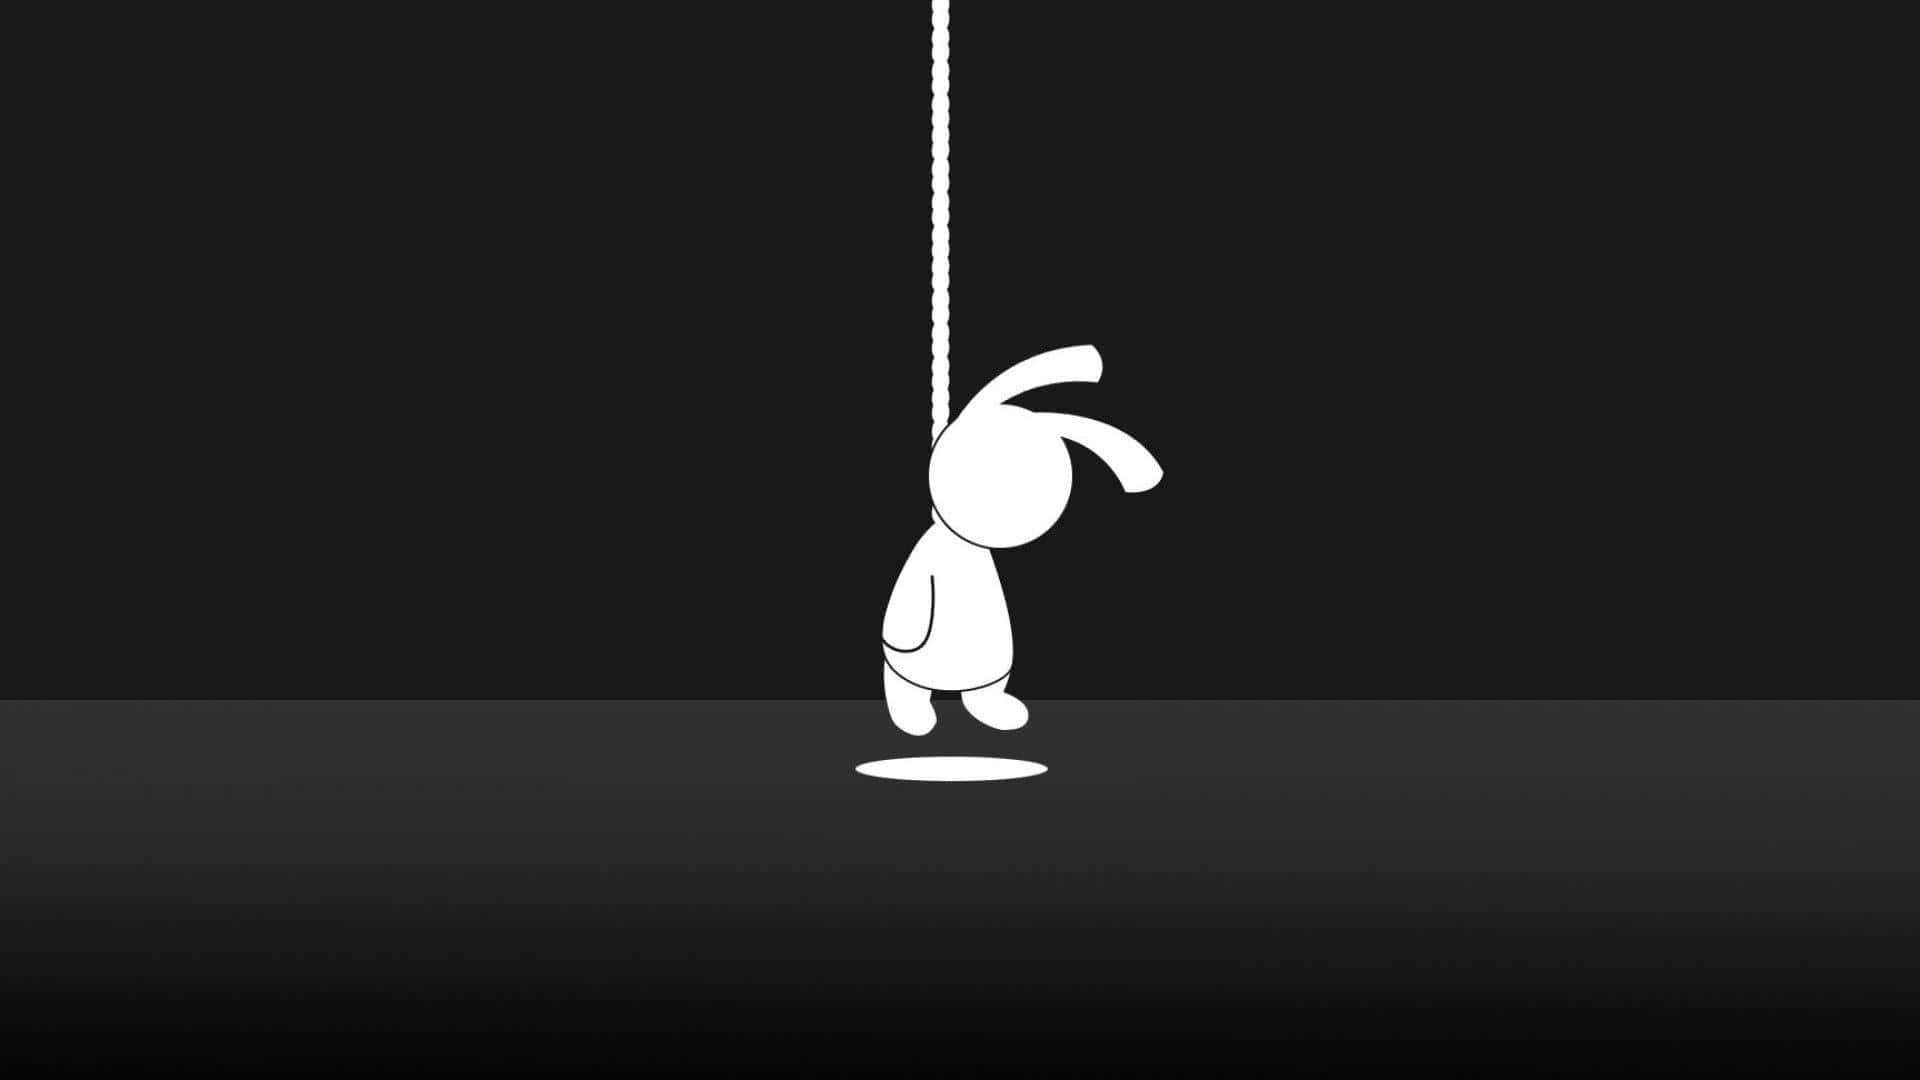 Unaimagen En Blanco Y Negro De Un Conejo Colgando De Una Cuerda Fondo de pantalla